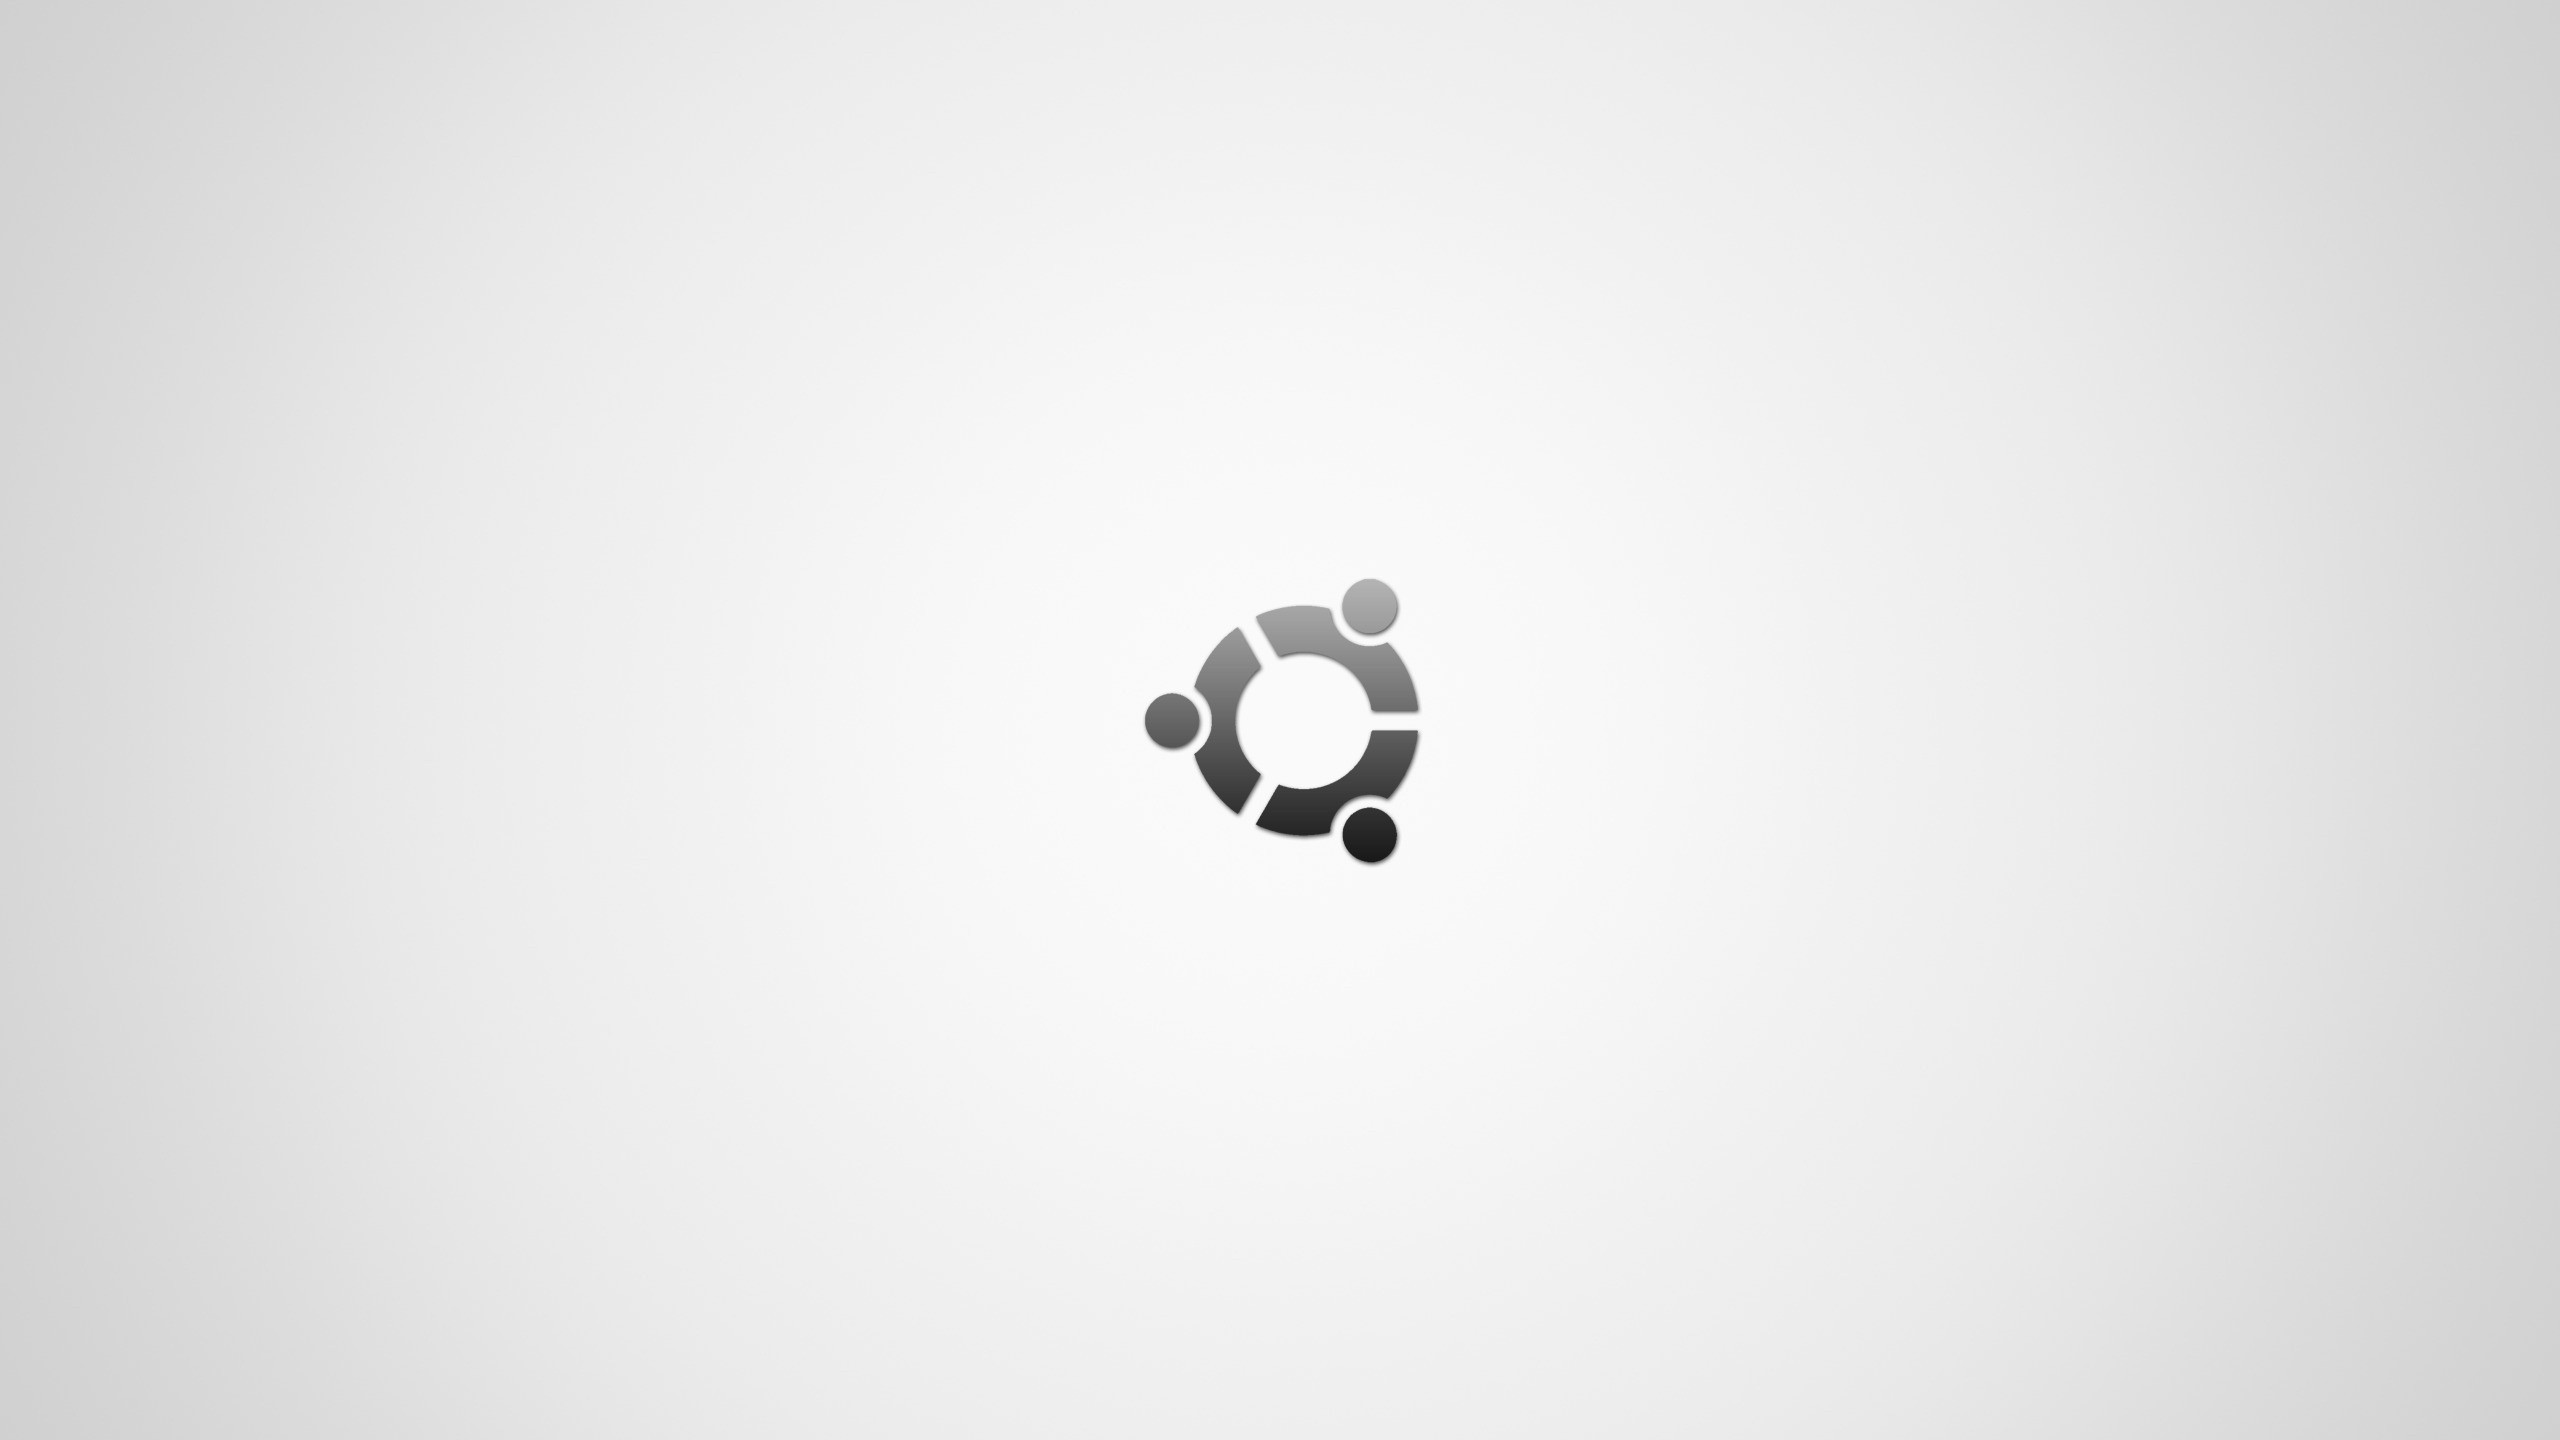 General 2560x1440 Ubuntu Linux monochrome operating system logo simple background white background